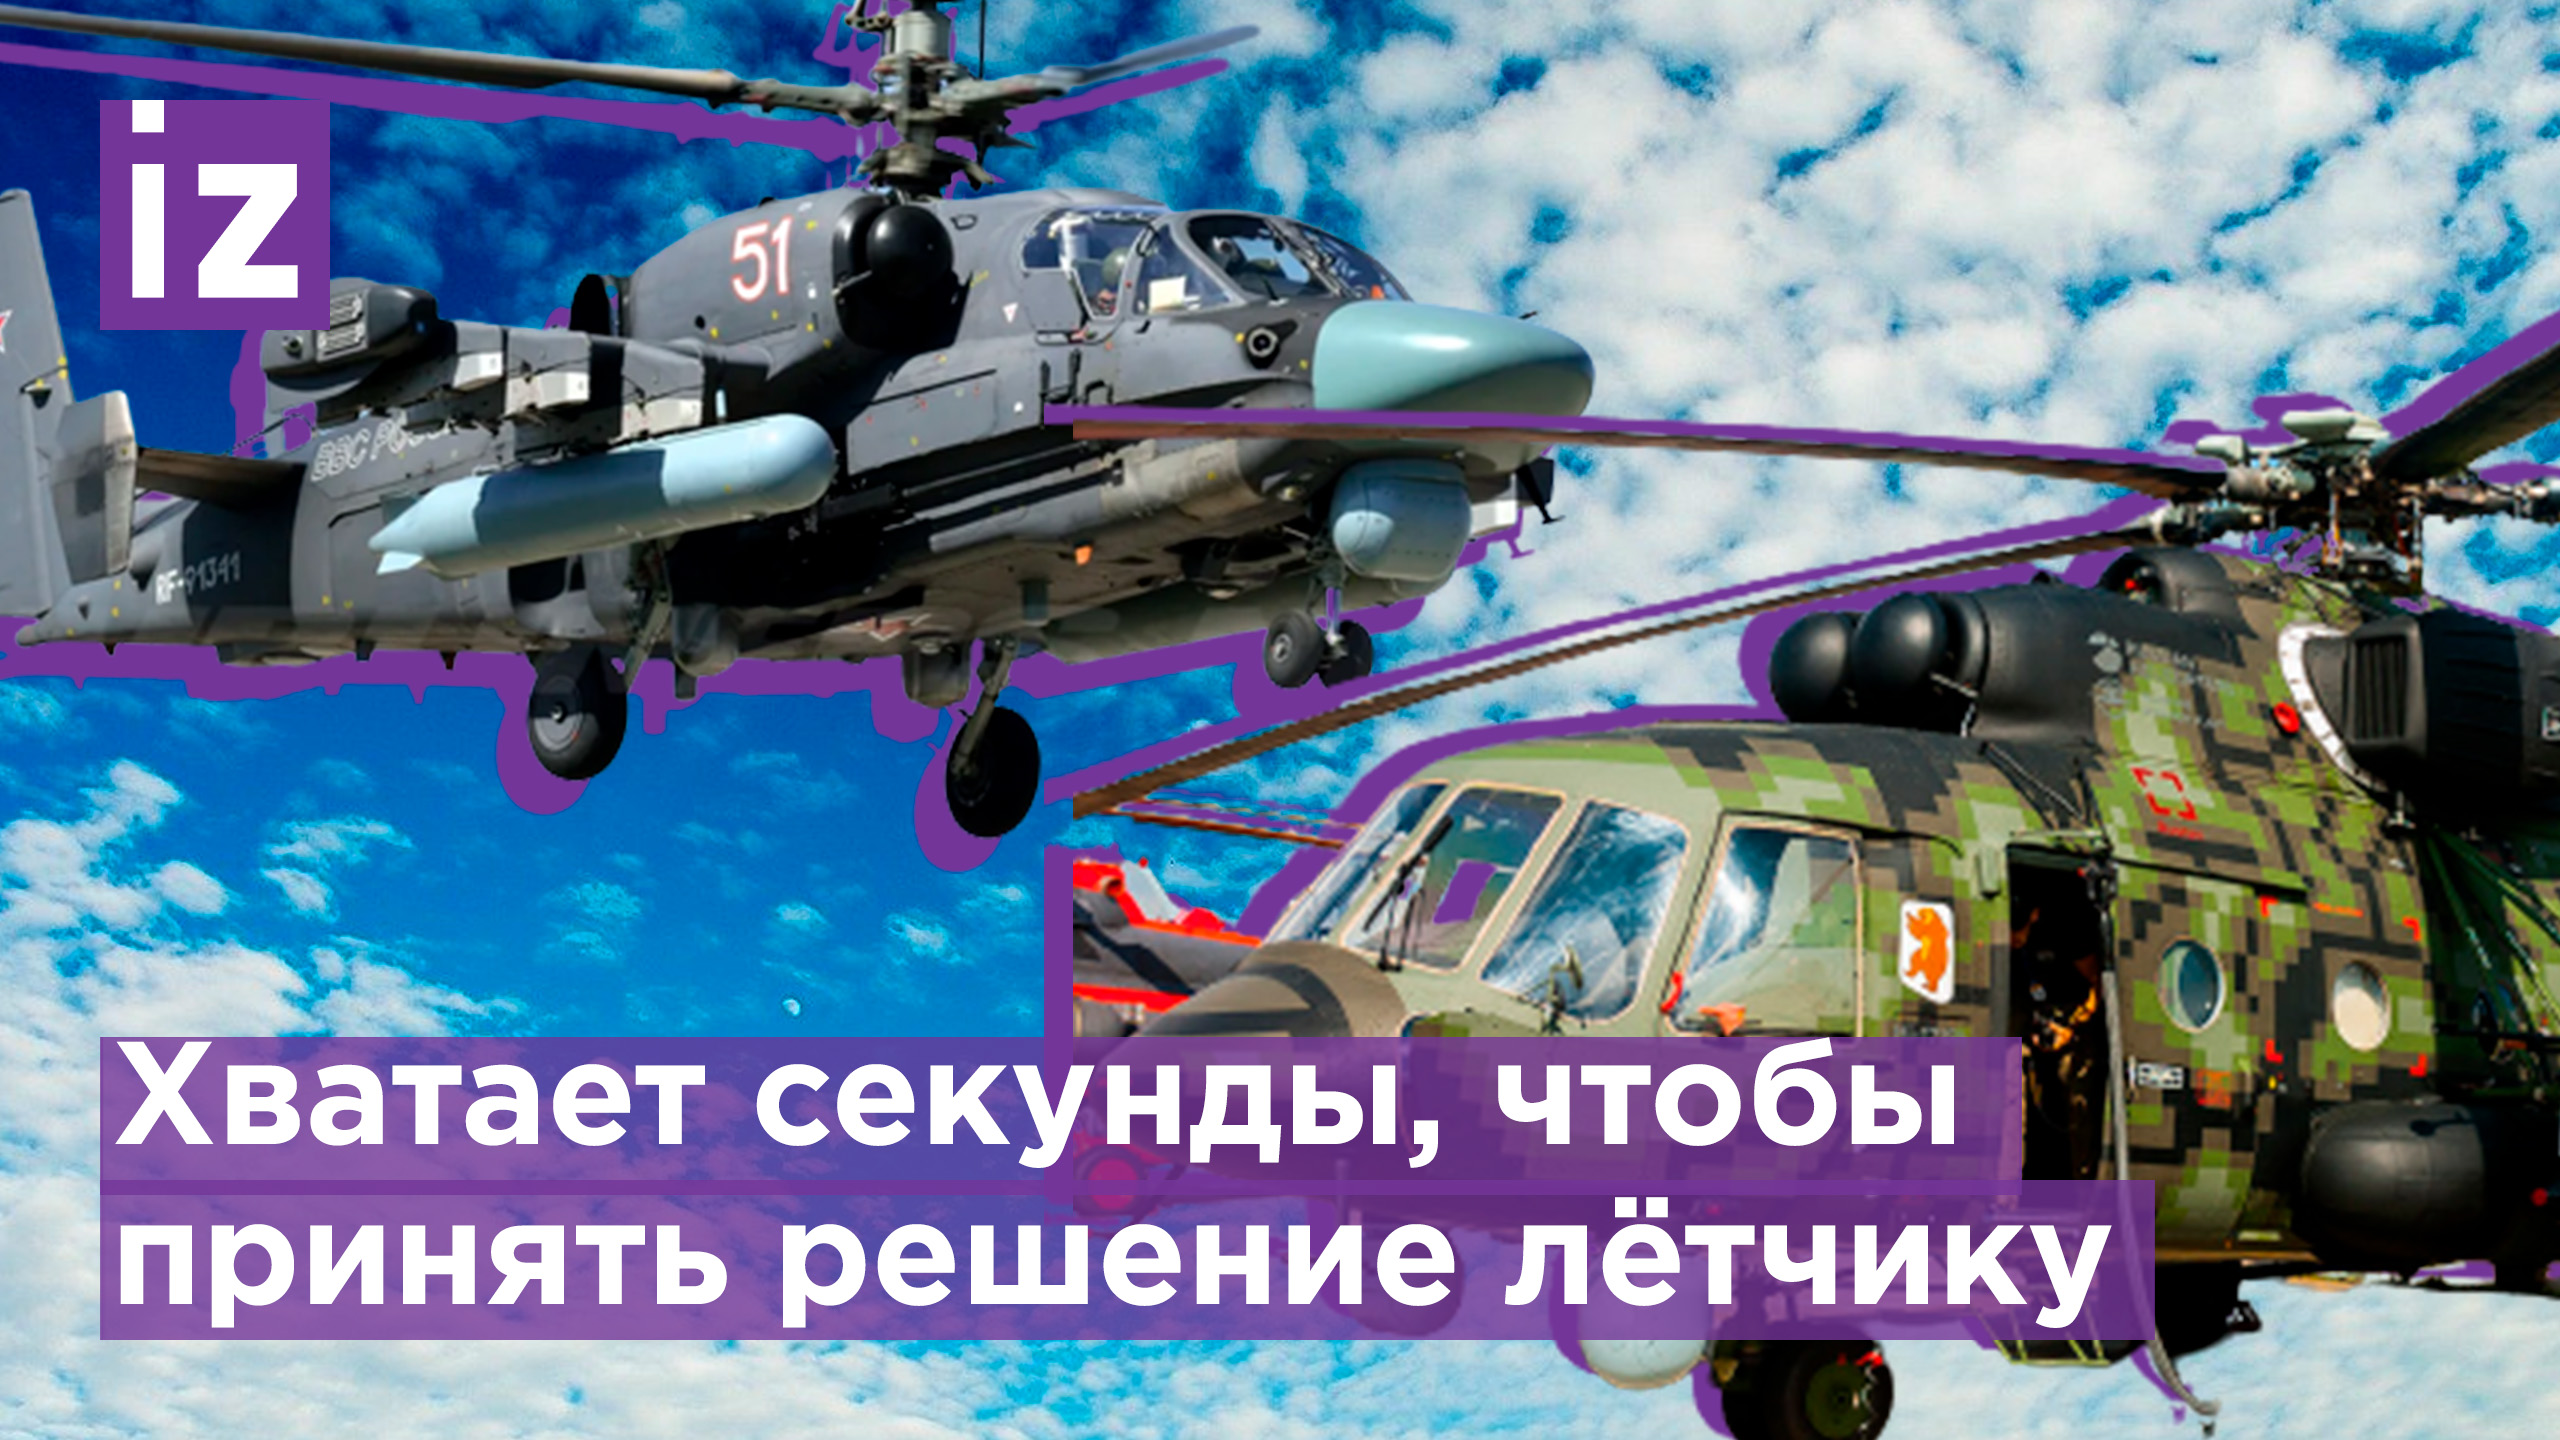 Экипажи вертолетов Ка-52 и Ми-8АМТШ проявляют героизм / Известия